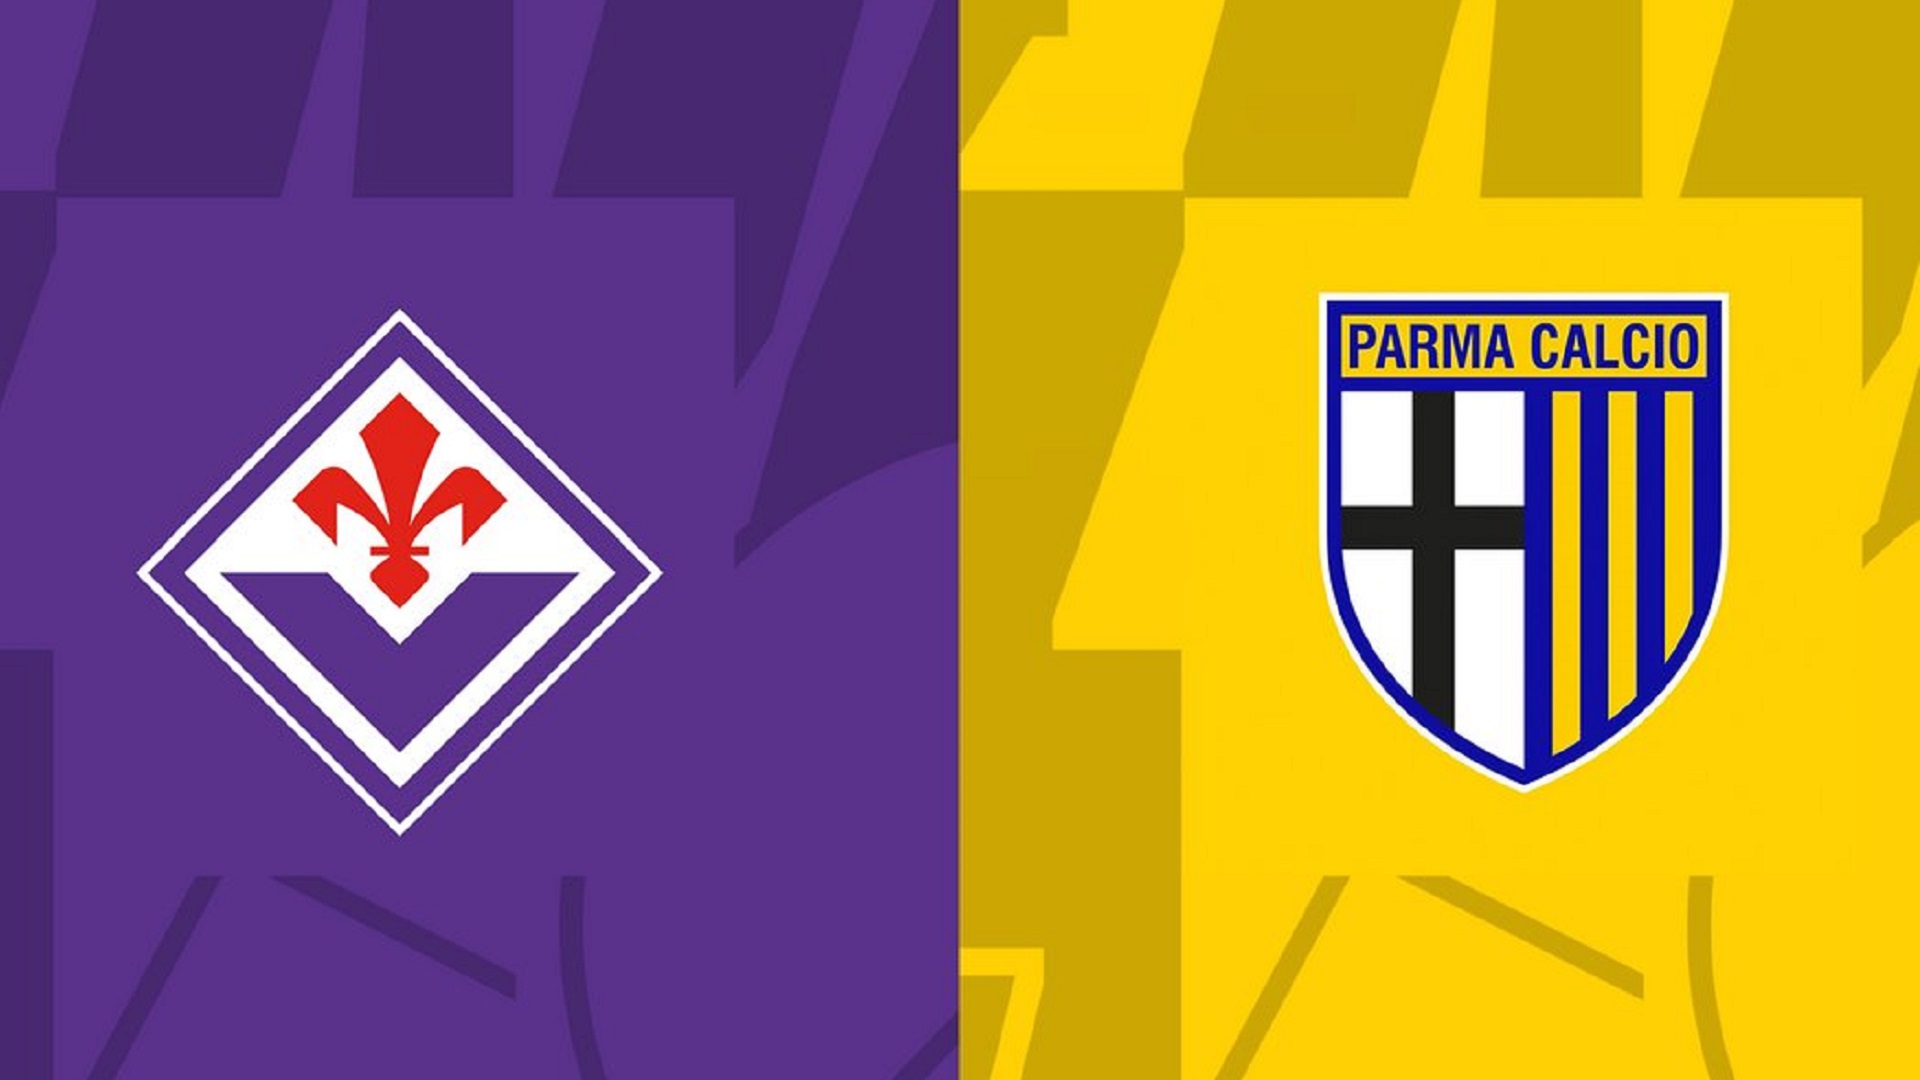 Fiorentina - Parma, alle 21 torna la Coppa Italia: ecco dove vederla in streaming gratis